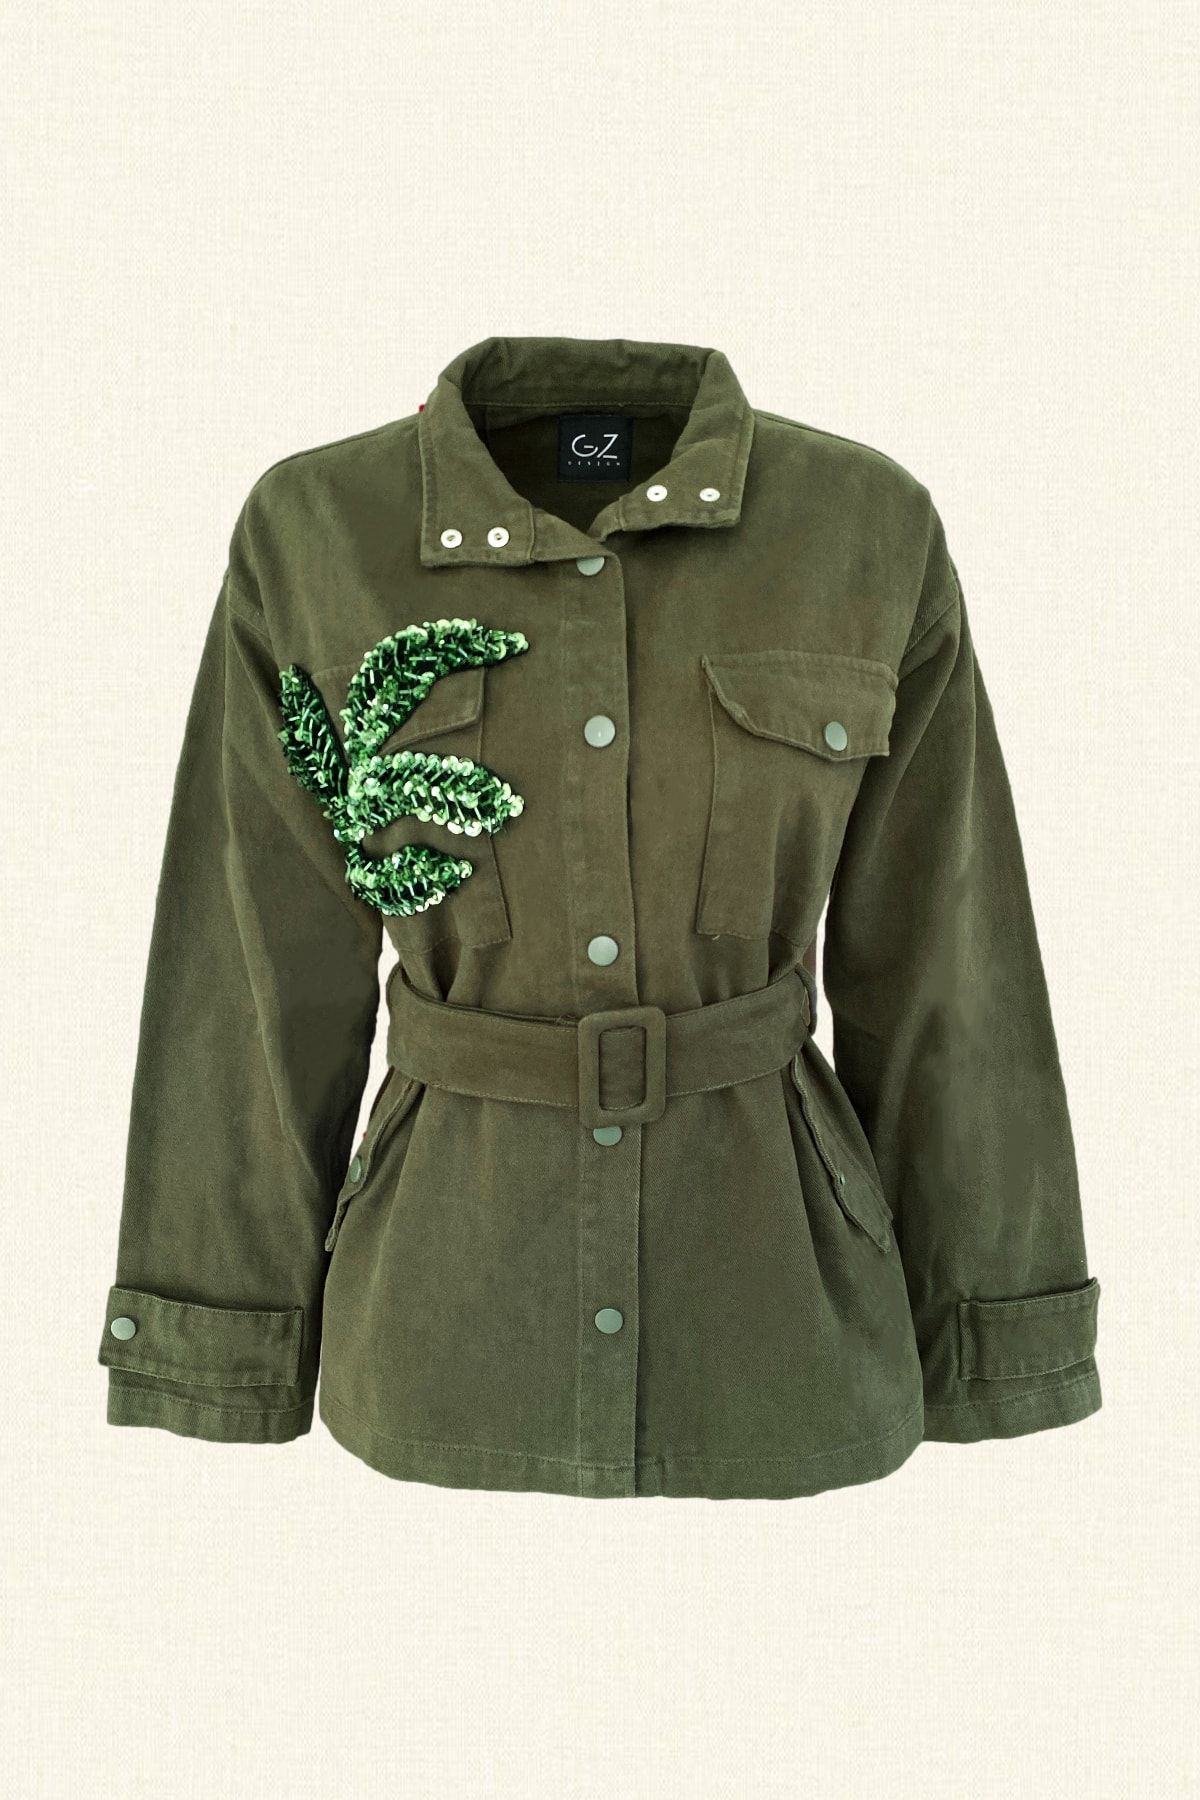 GZ Design Yaprak Işlemeli Yeşil Renk Jean Ceket